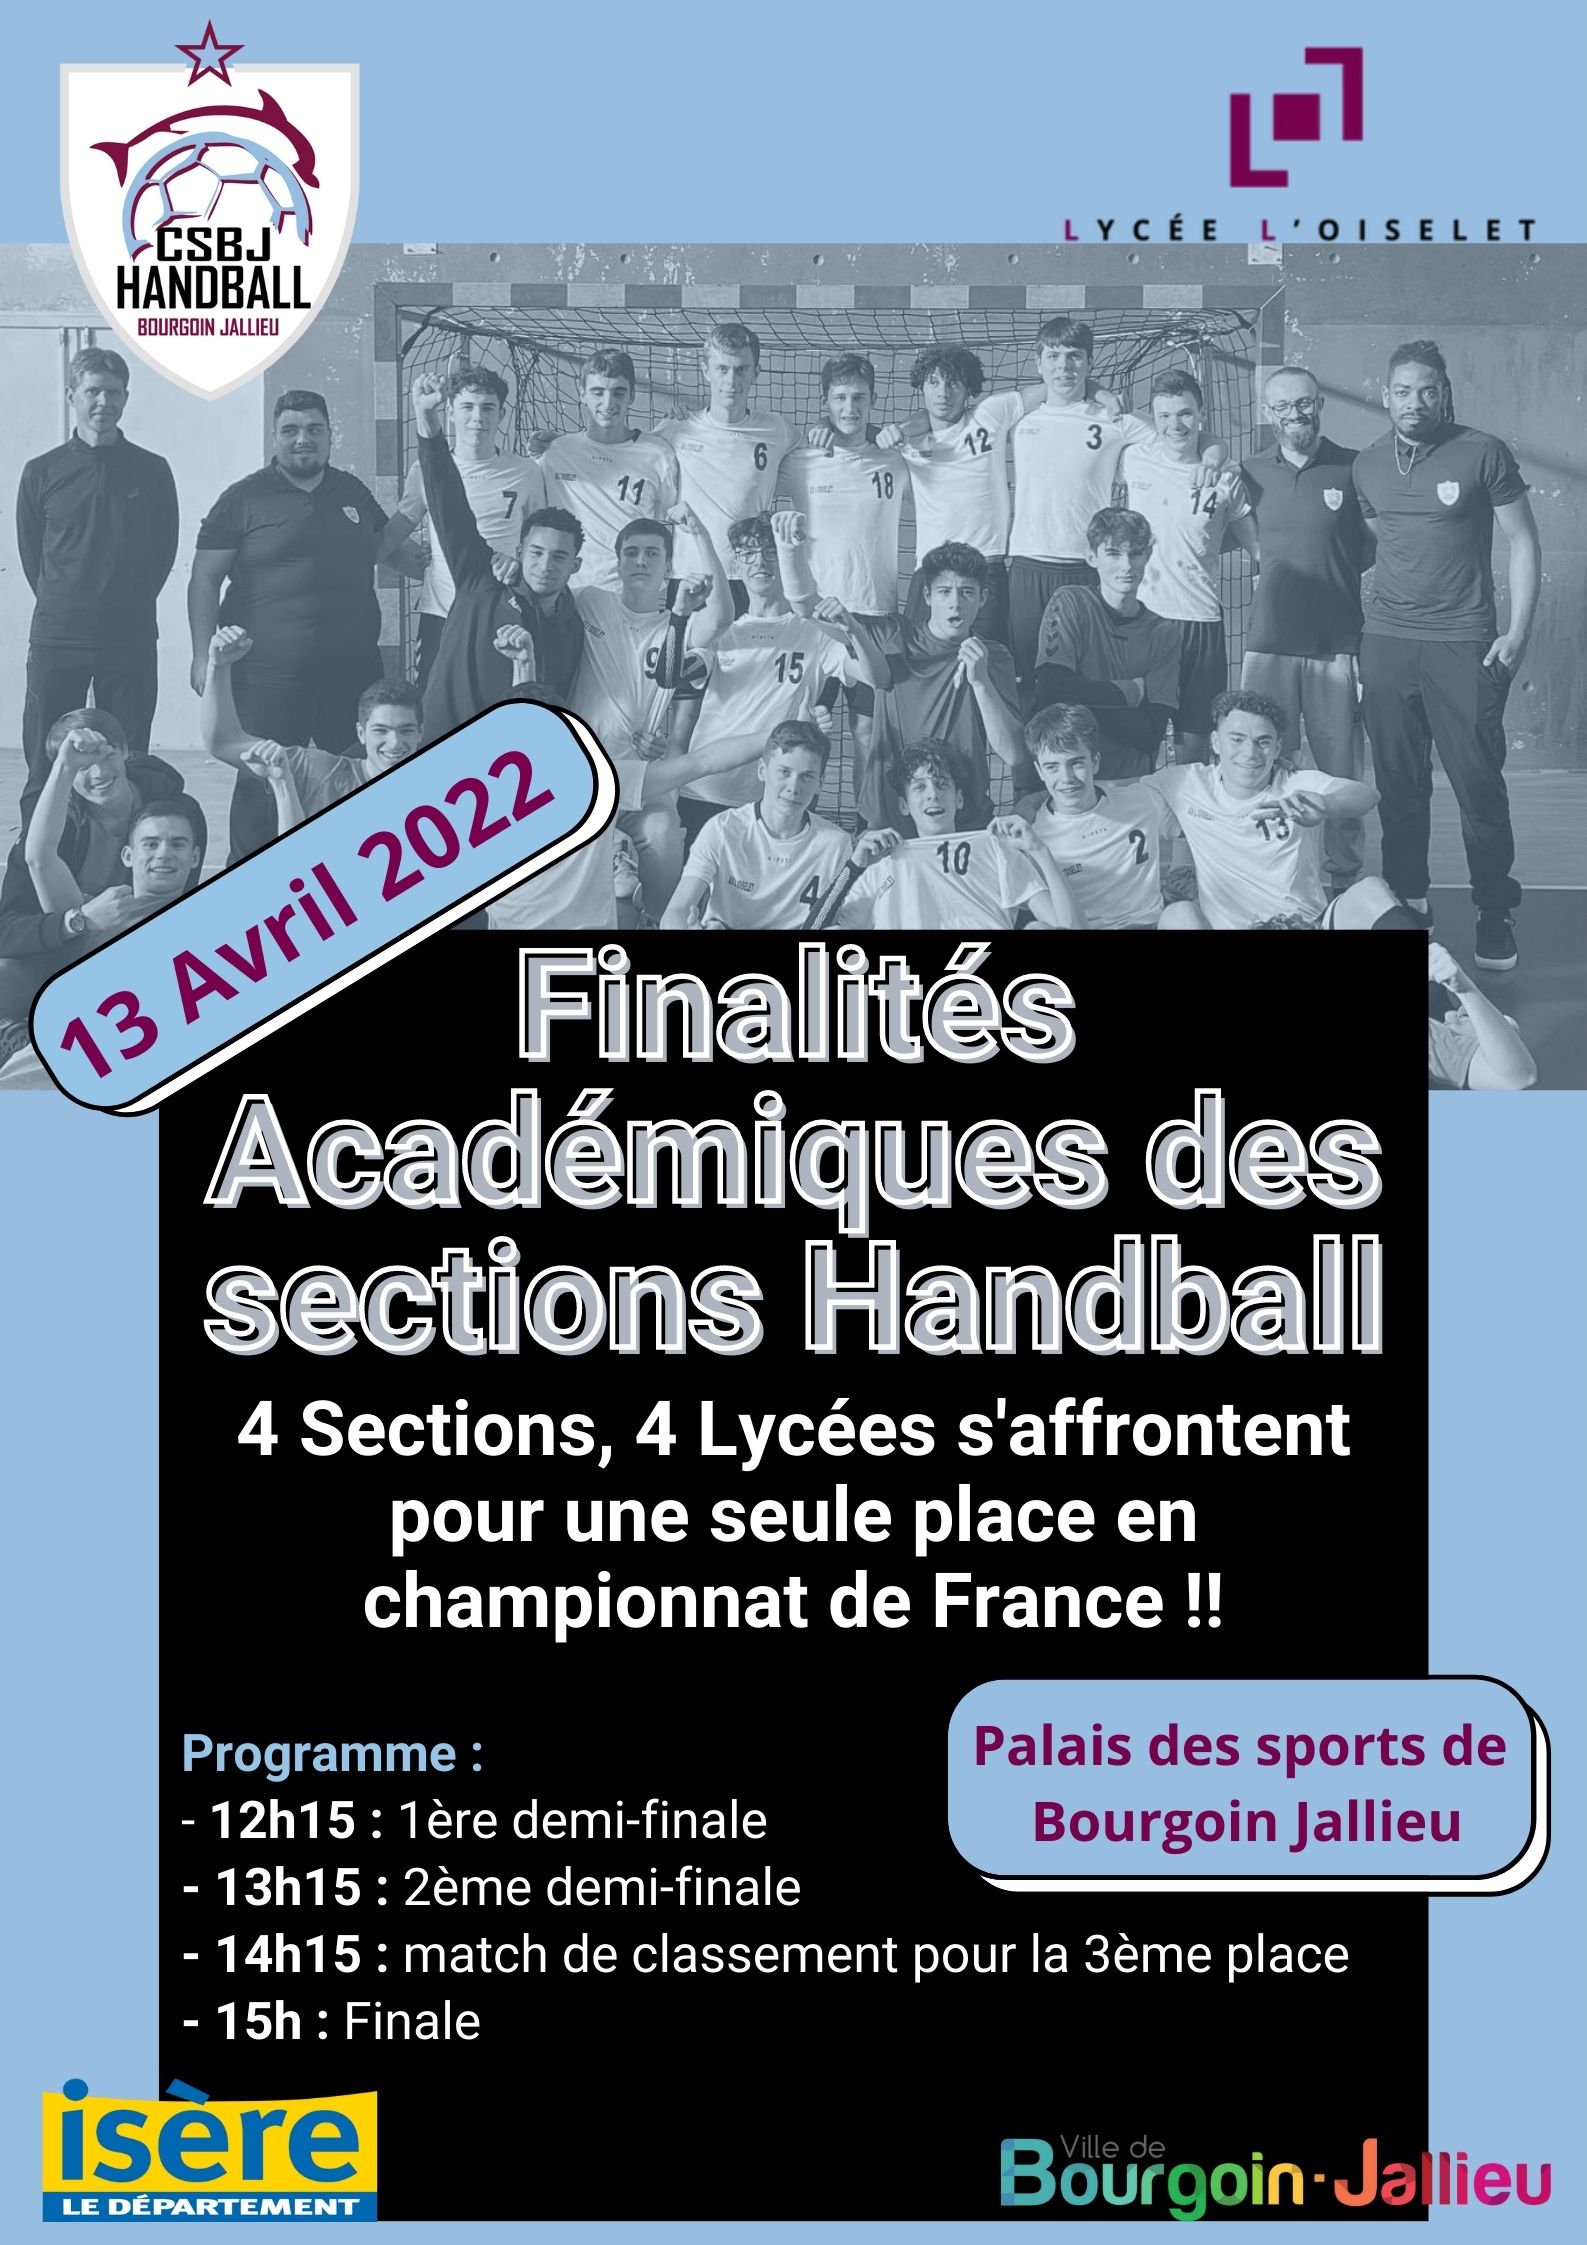 Finalités Académiques pour les sections Handball du Lycée de l'Oiselet Féminine et Masculine